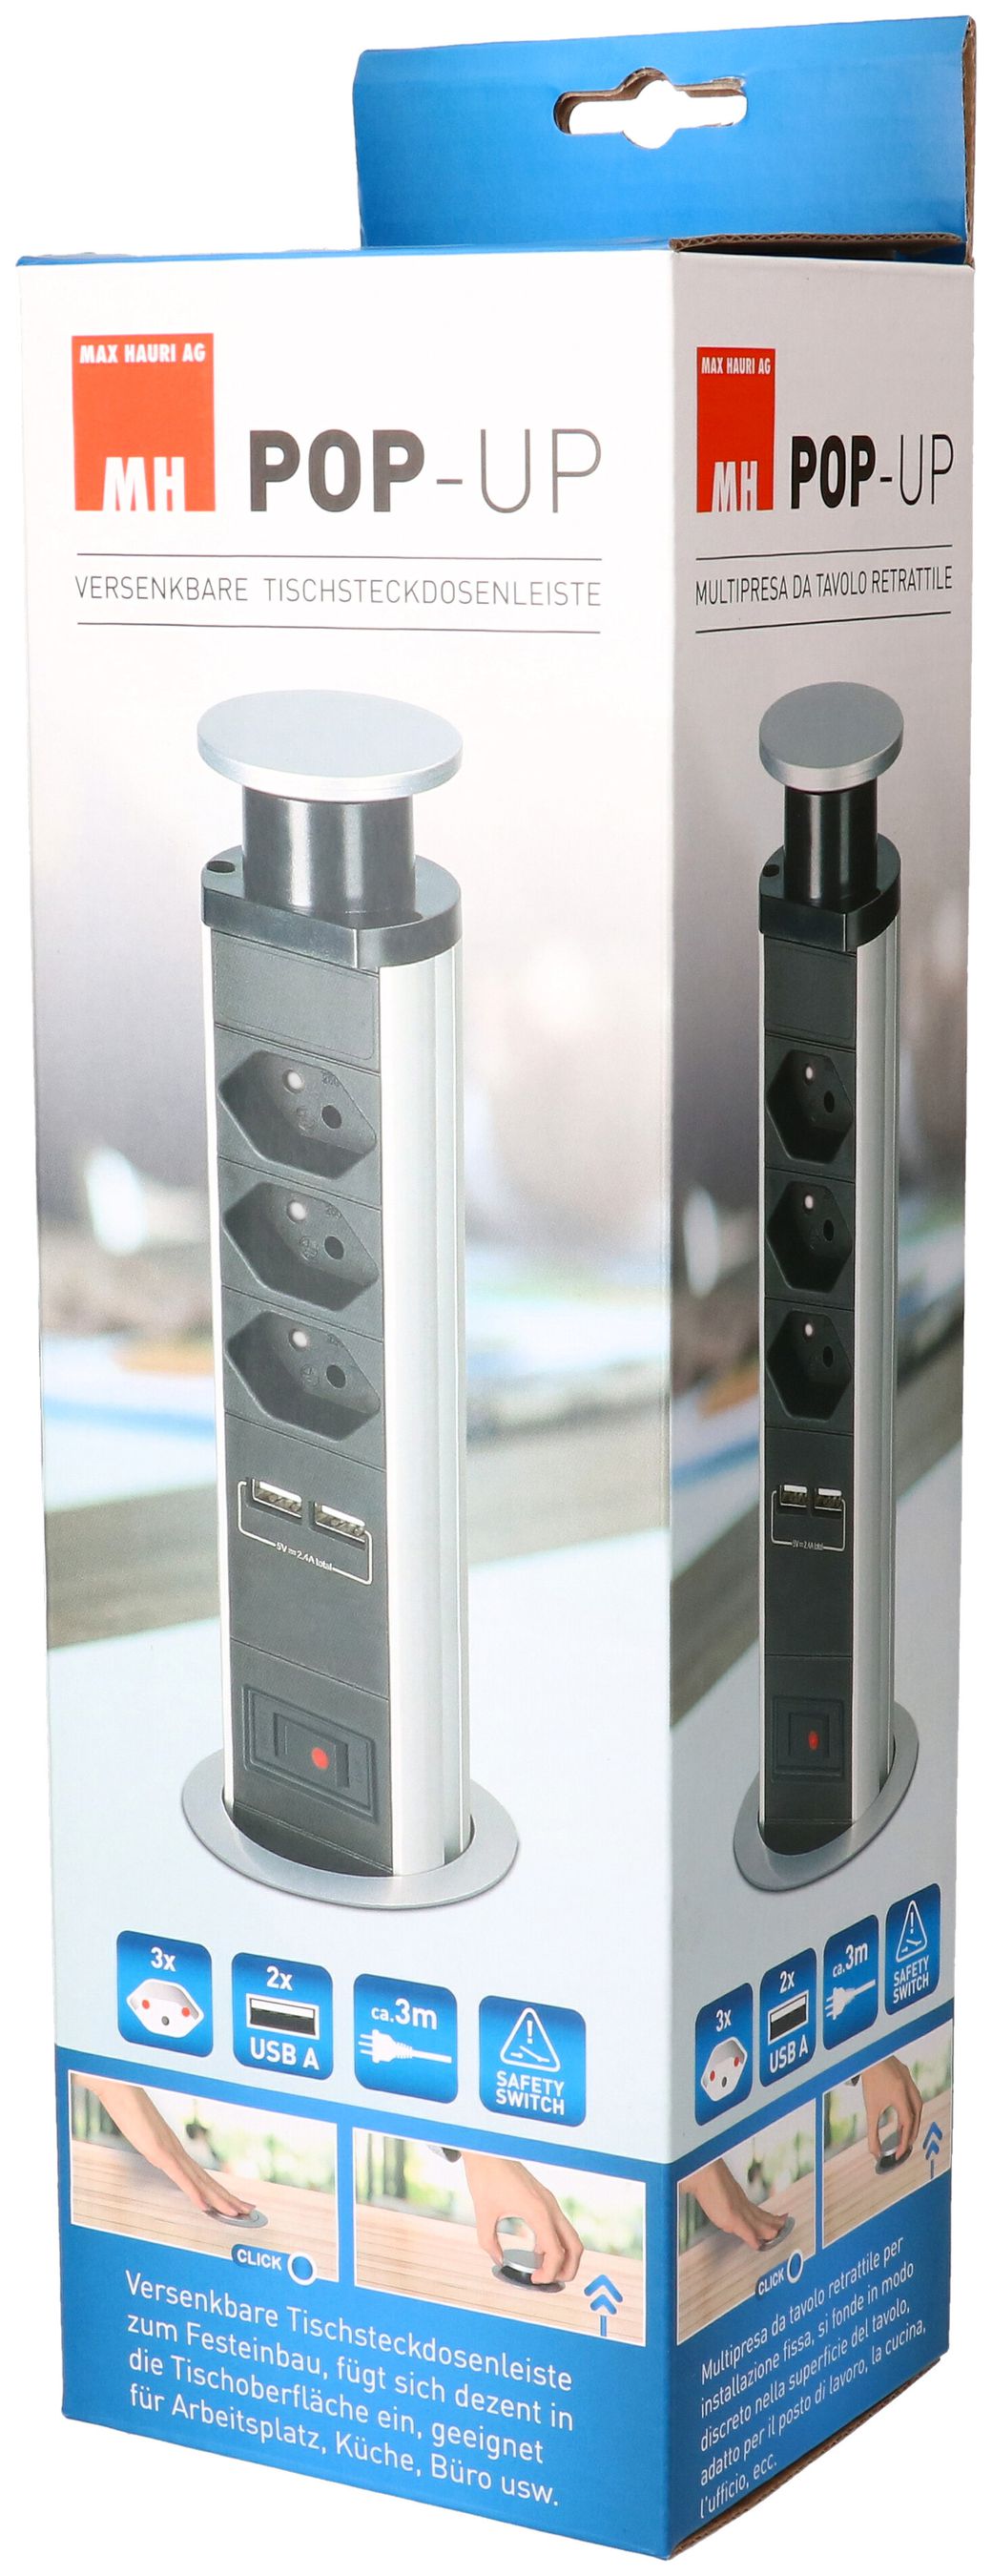 POP-UP Tischsteckdosenleiste / 3x Typ 13 mit BS / 2x USB A 2.4A